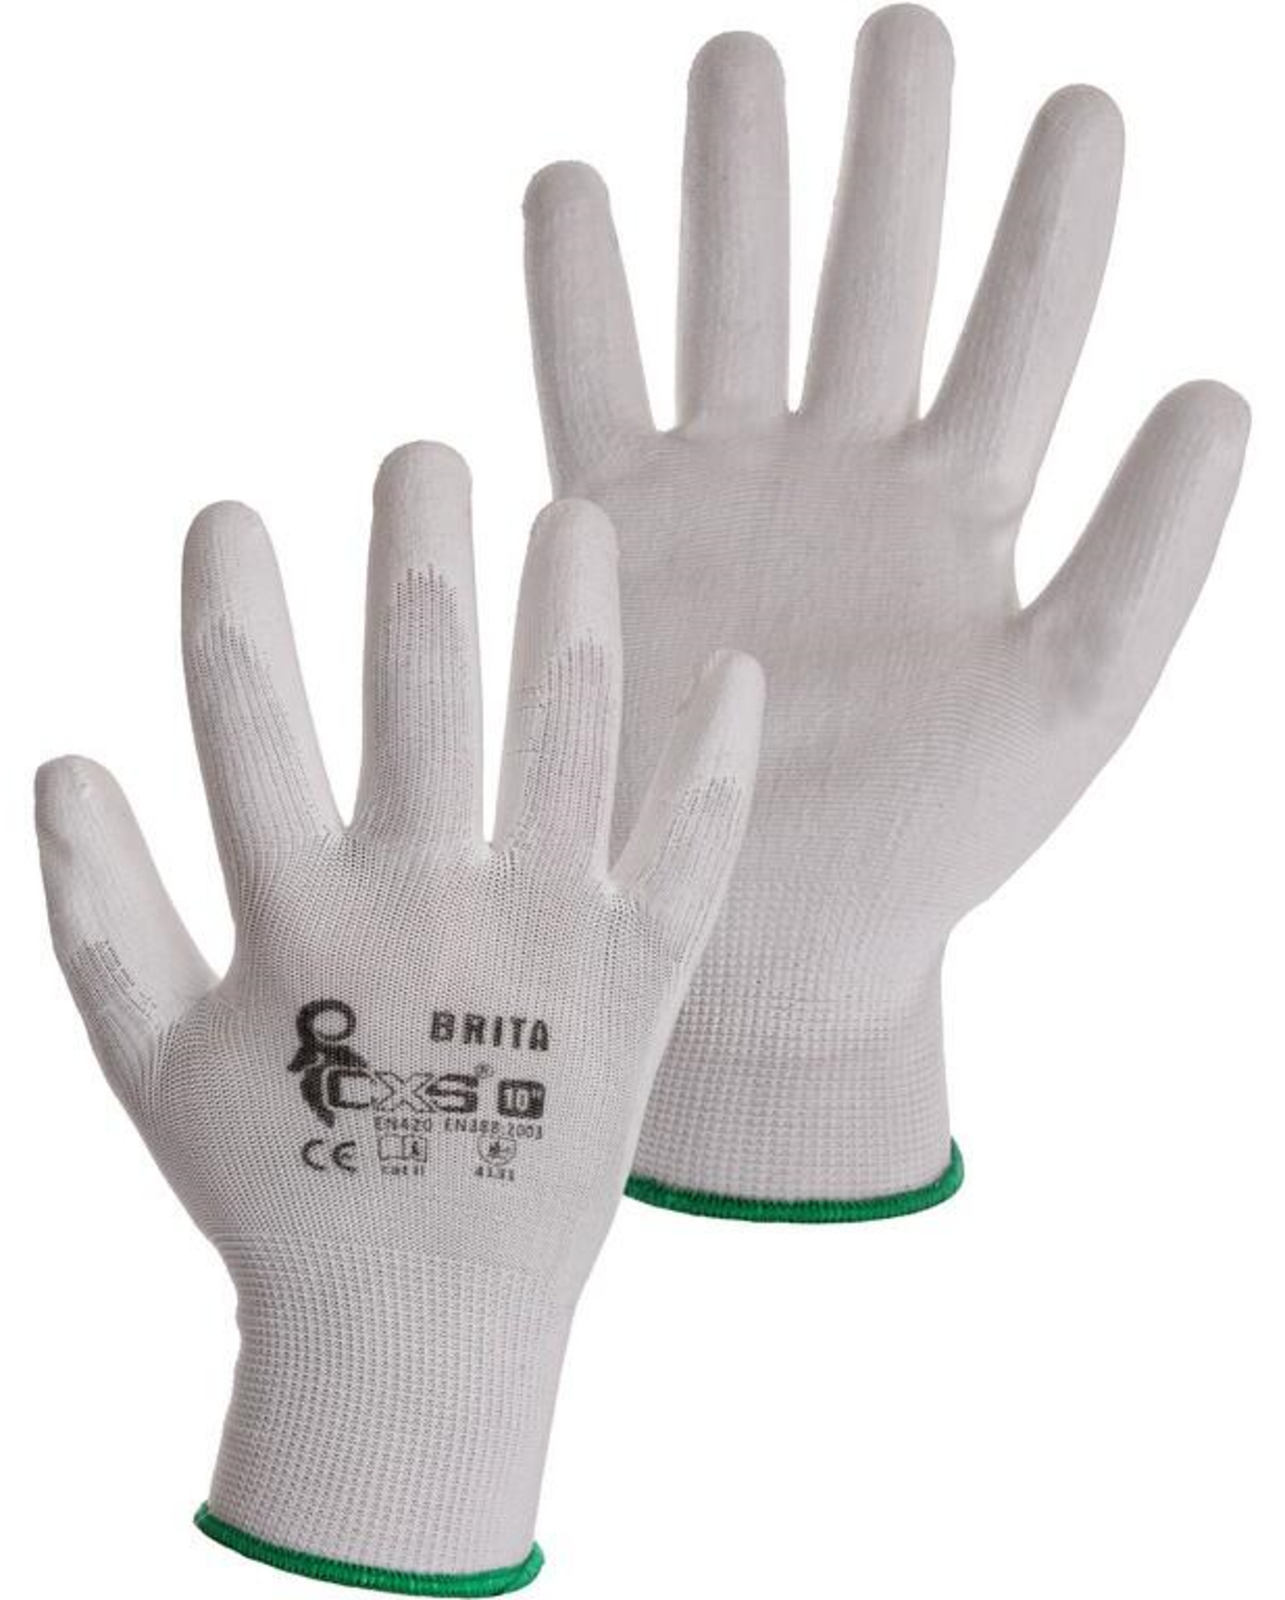 Pracovné rukavice CXS Brita biele - veľkosť: 10/XL, farba: biela